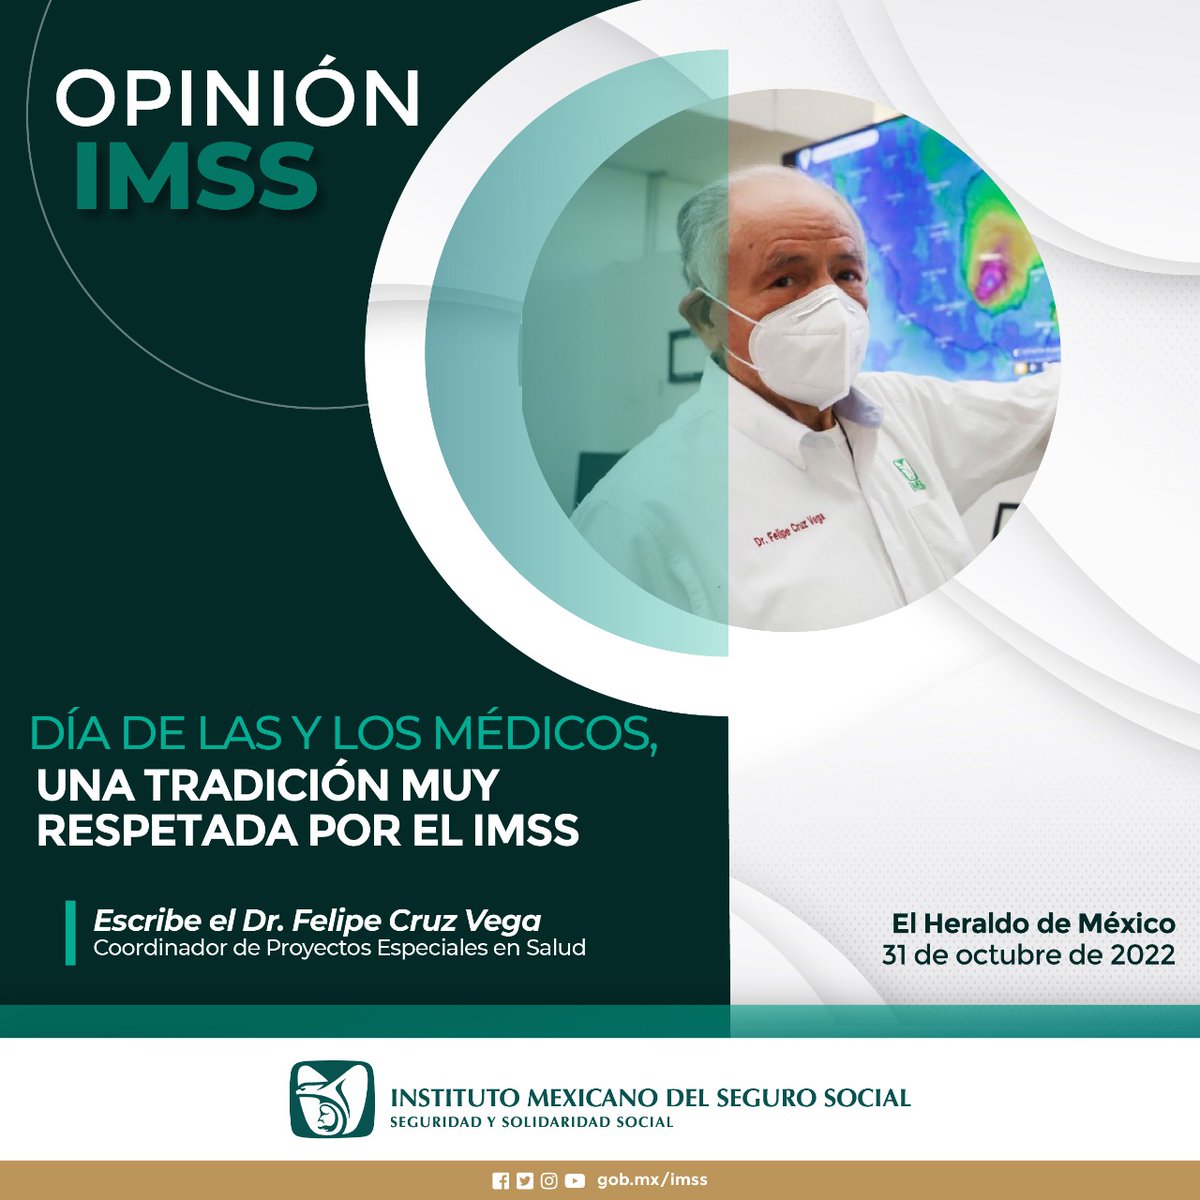 Día de las y los médicos, una tradición muy respetada por el #IMSS. 🖋️ #OpiniónIMSS del Dr. Felipe Cruz Vega, Coordinador de Proyectos Especiales en Salud. >> bit.ly/3DrgBFz